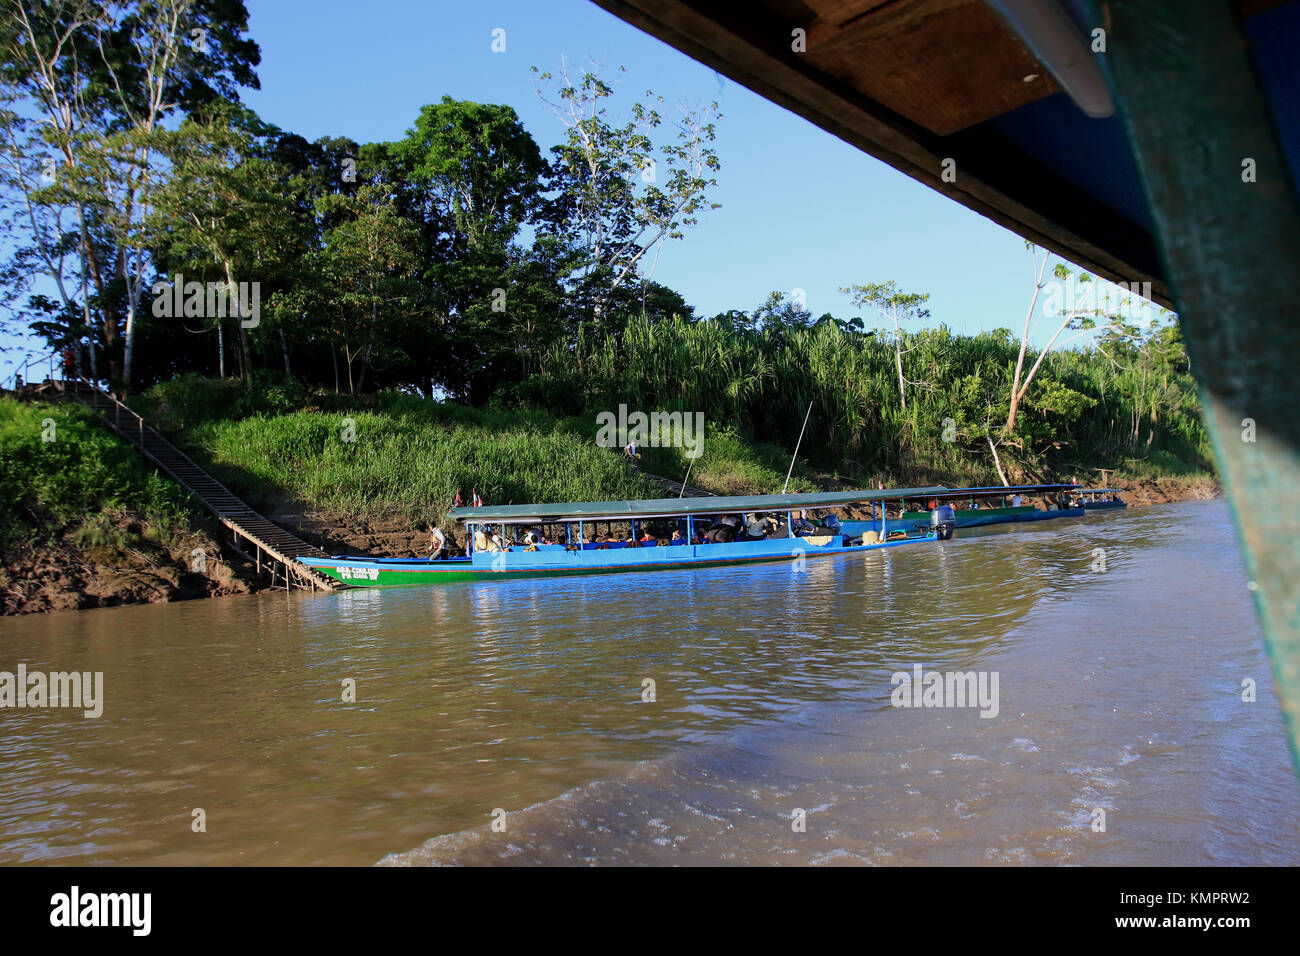 Puerto Maldonado ( Peru) November, 25 th 2015;Tambopata River in the Peruvian Amazon. Boat sailing on the river Credit: Sebastien Lapeyrere/Alamy Live News. Stock Photo